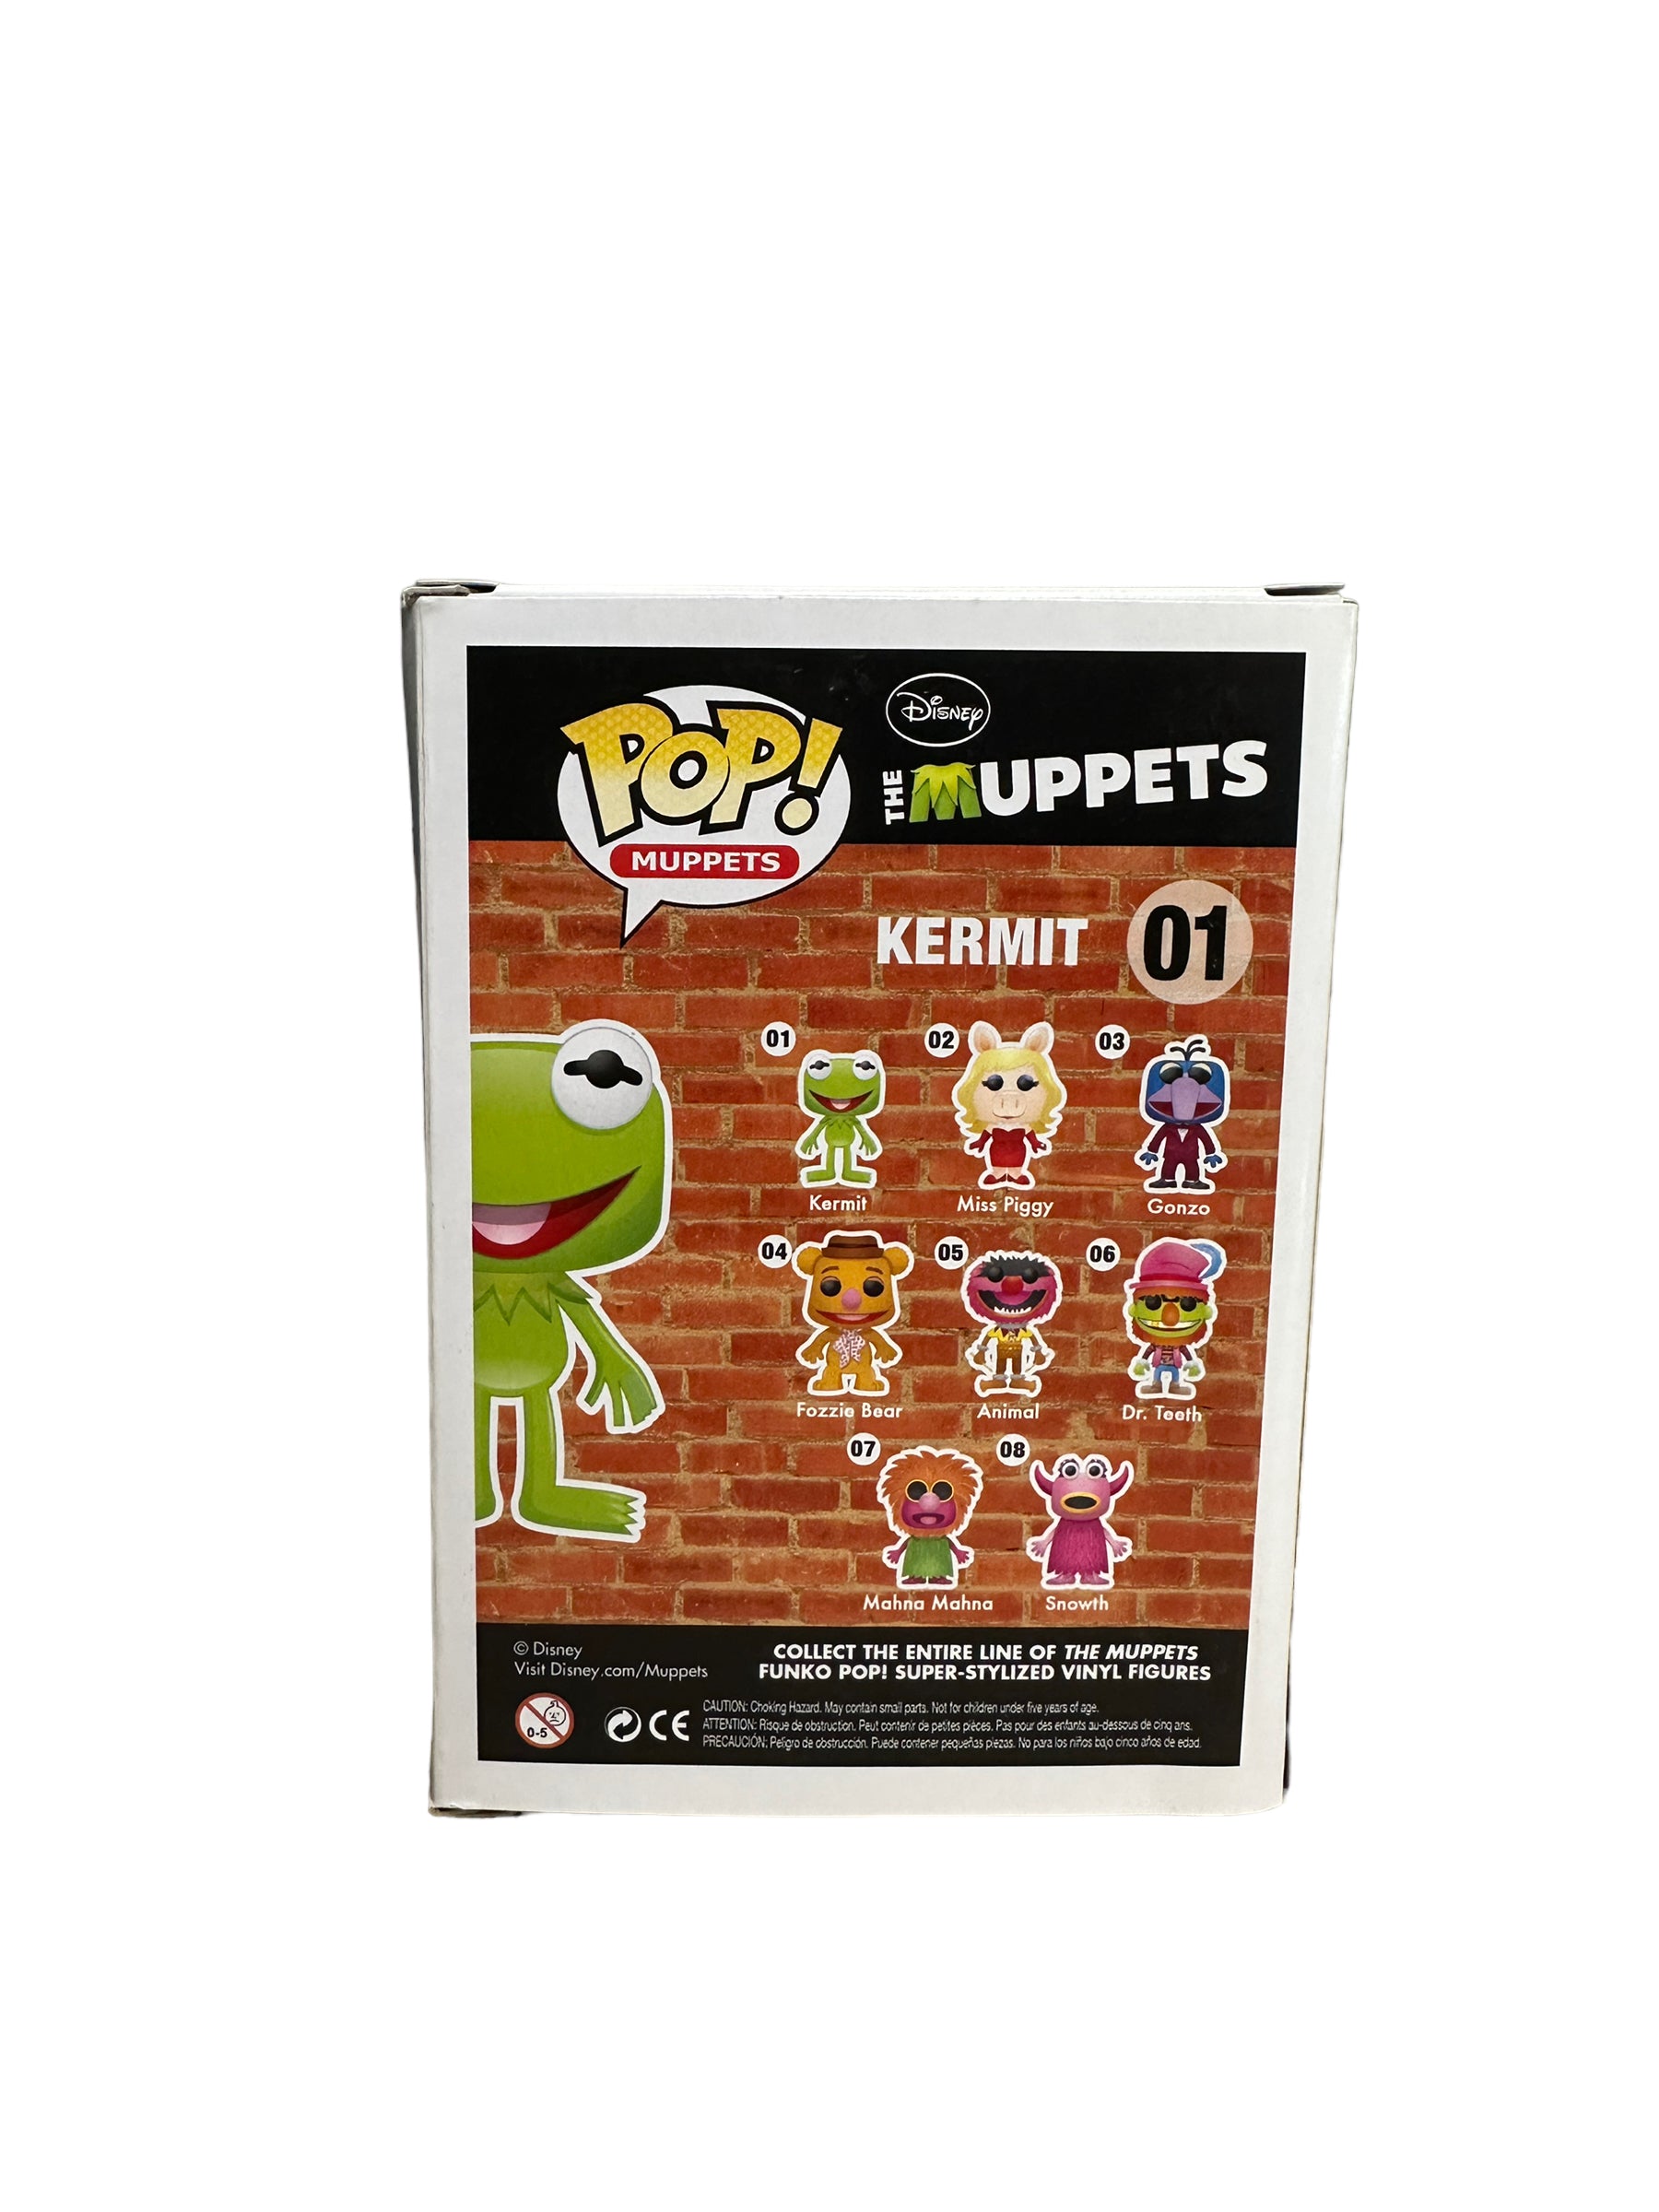 Kermit #01 (Metallic) Funko Pop! - The Muppets - SDCC 2013 Exclusive LE480 Pcs - Condition 8/10